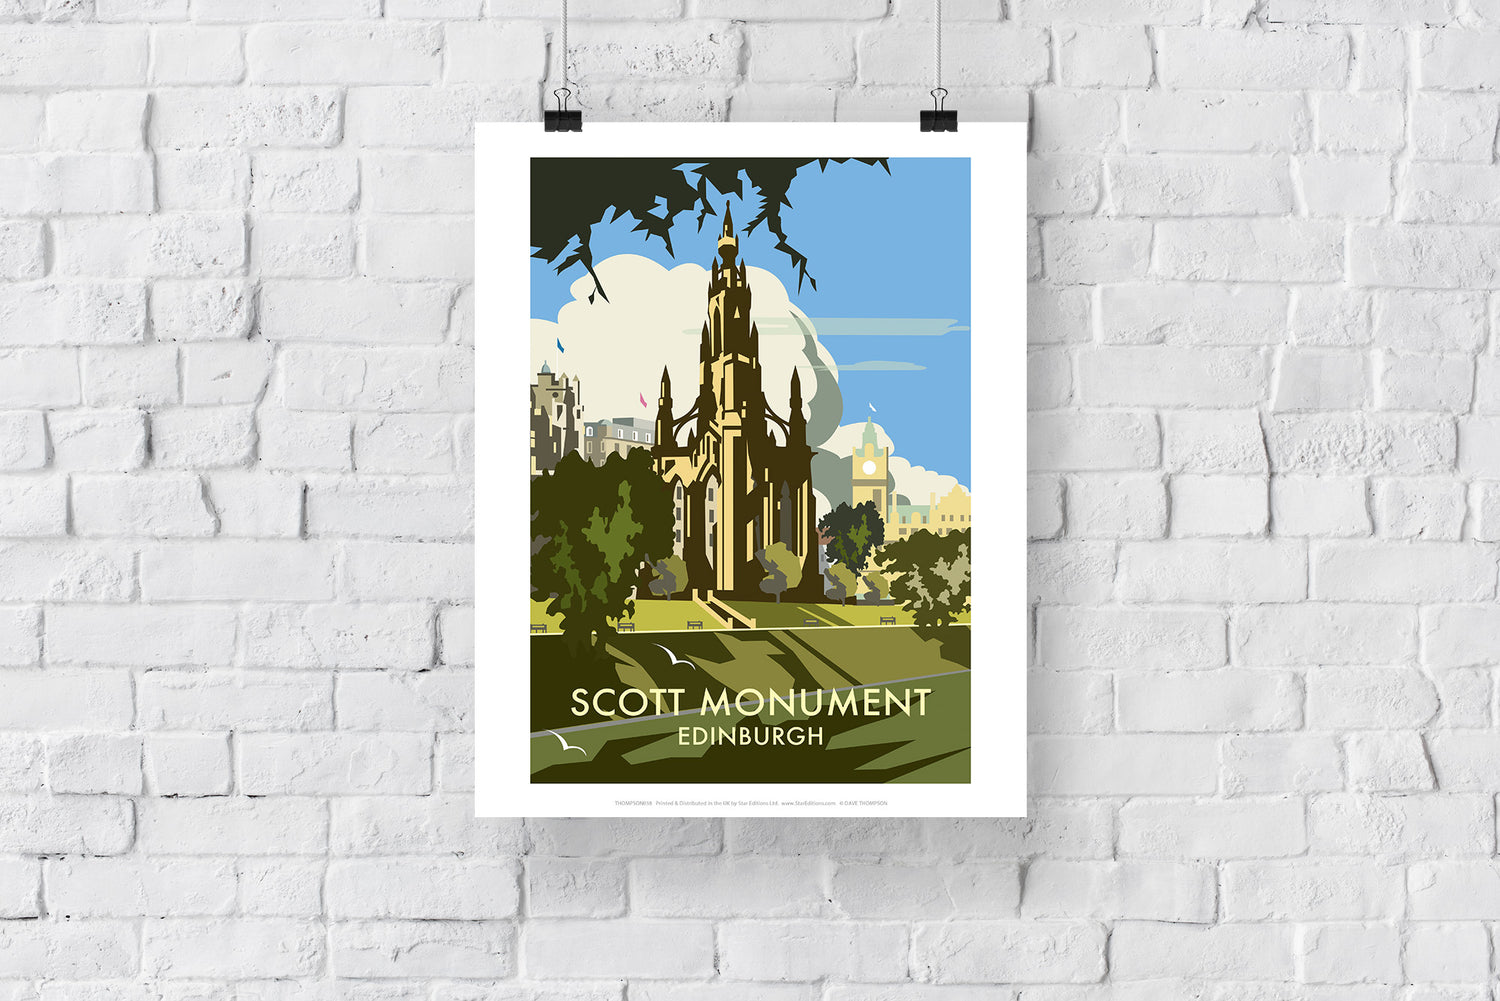 Scott Monument, Edinburgh - Art Print